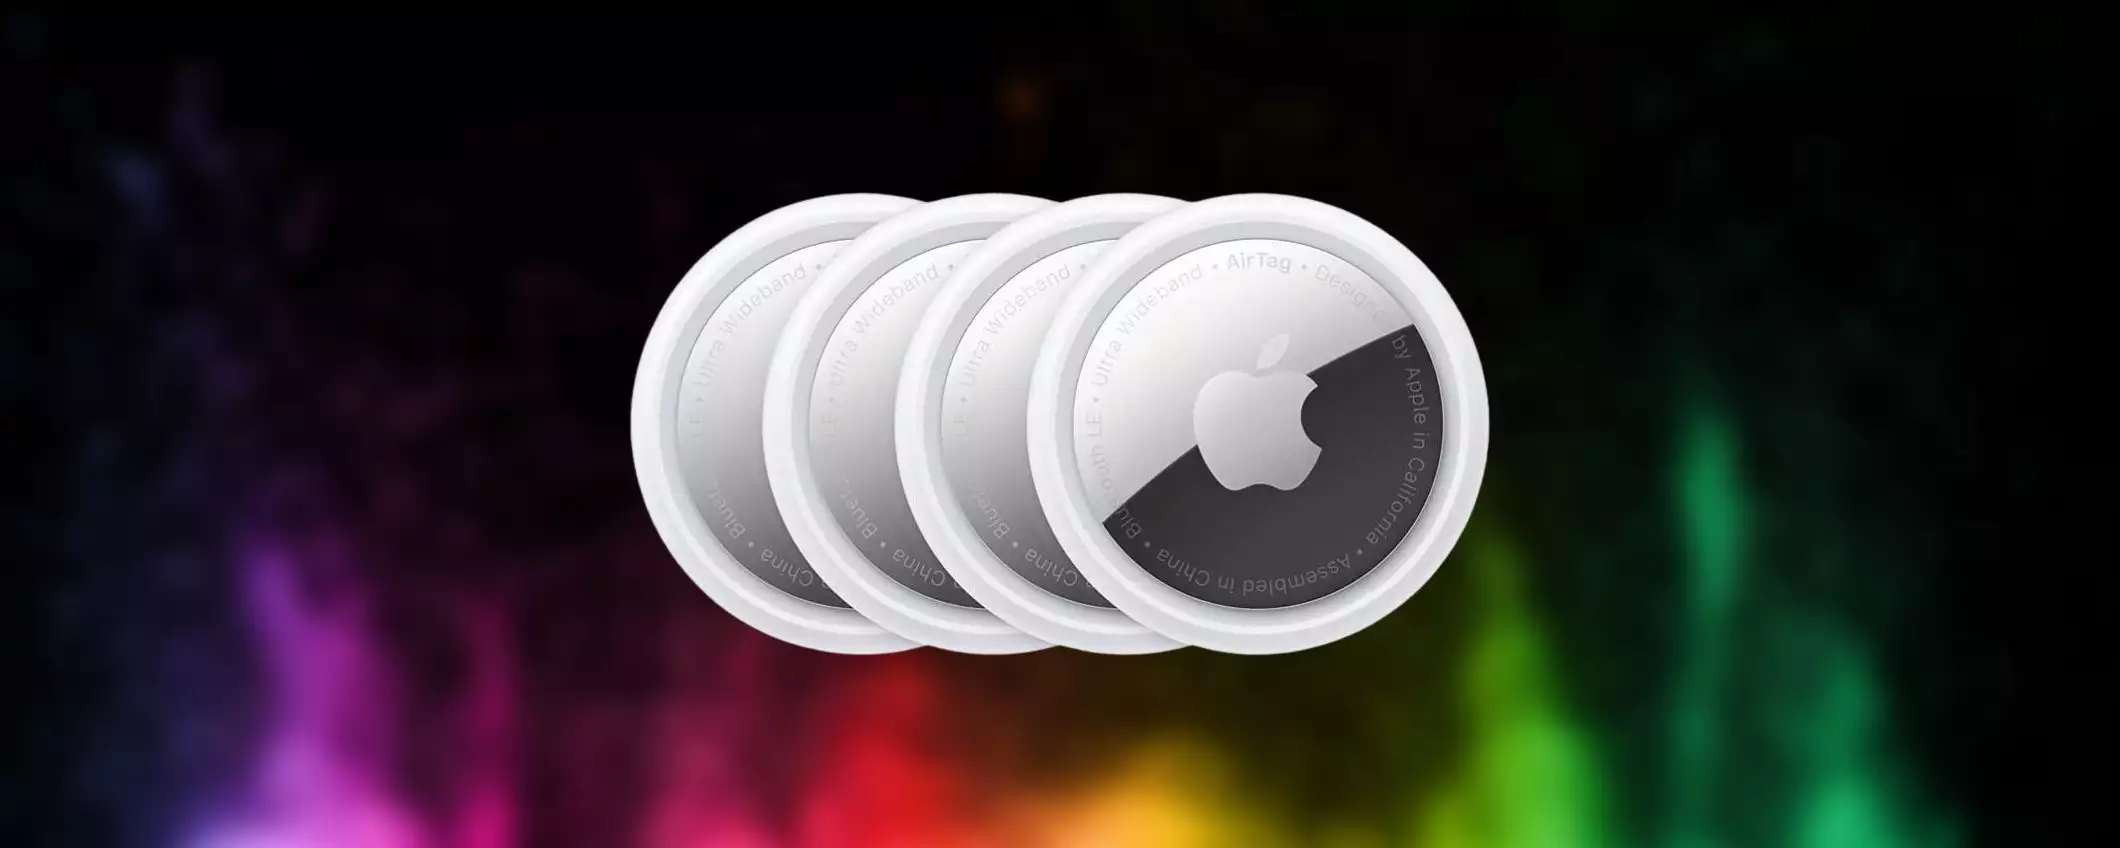 Apple AirTag, offerta sulla confezione da 4 pezzi: 1 è GRATIS